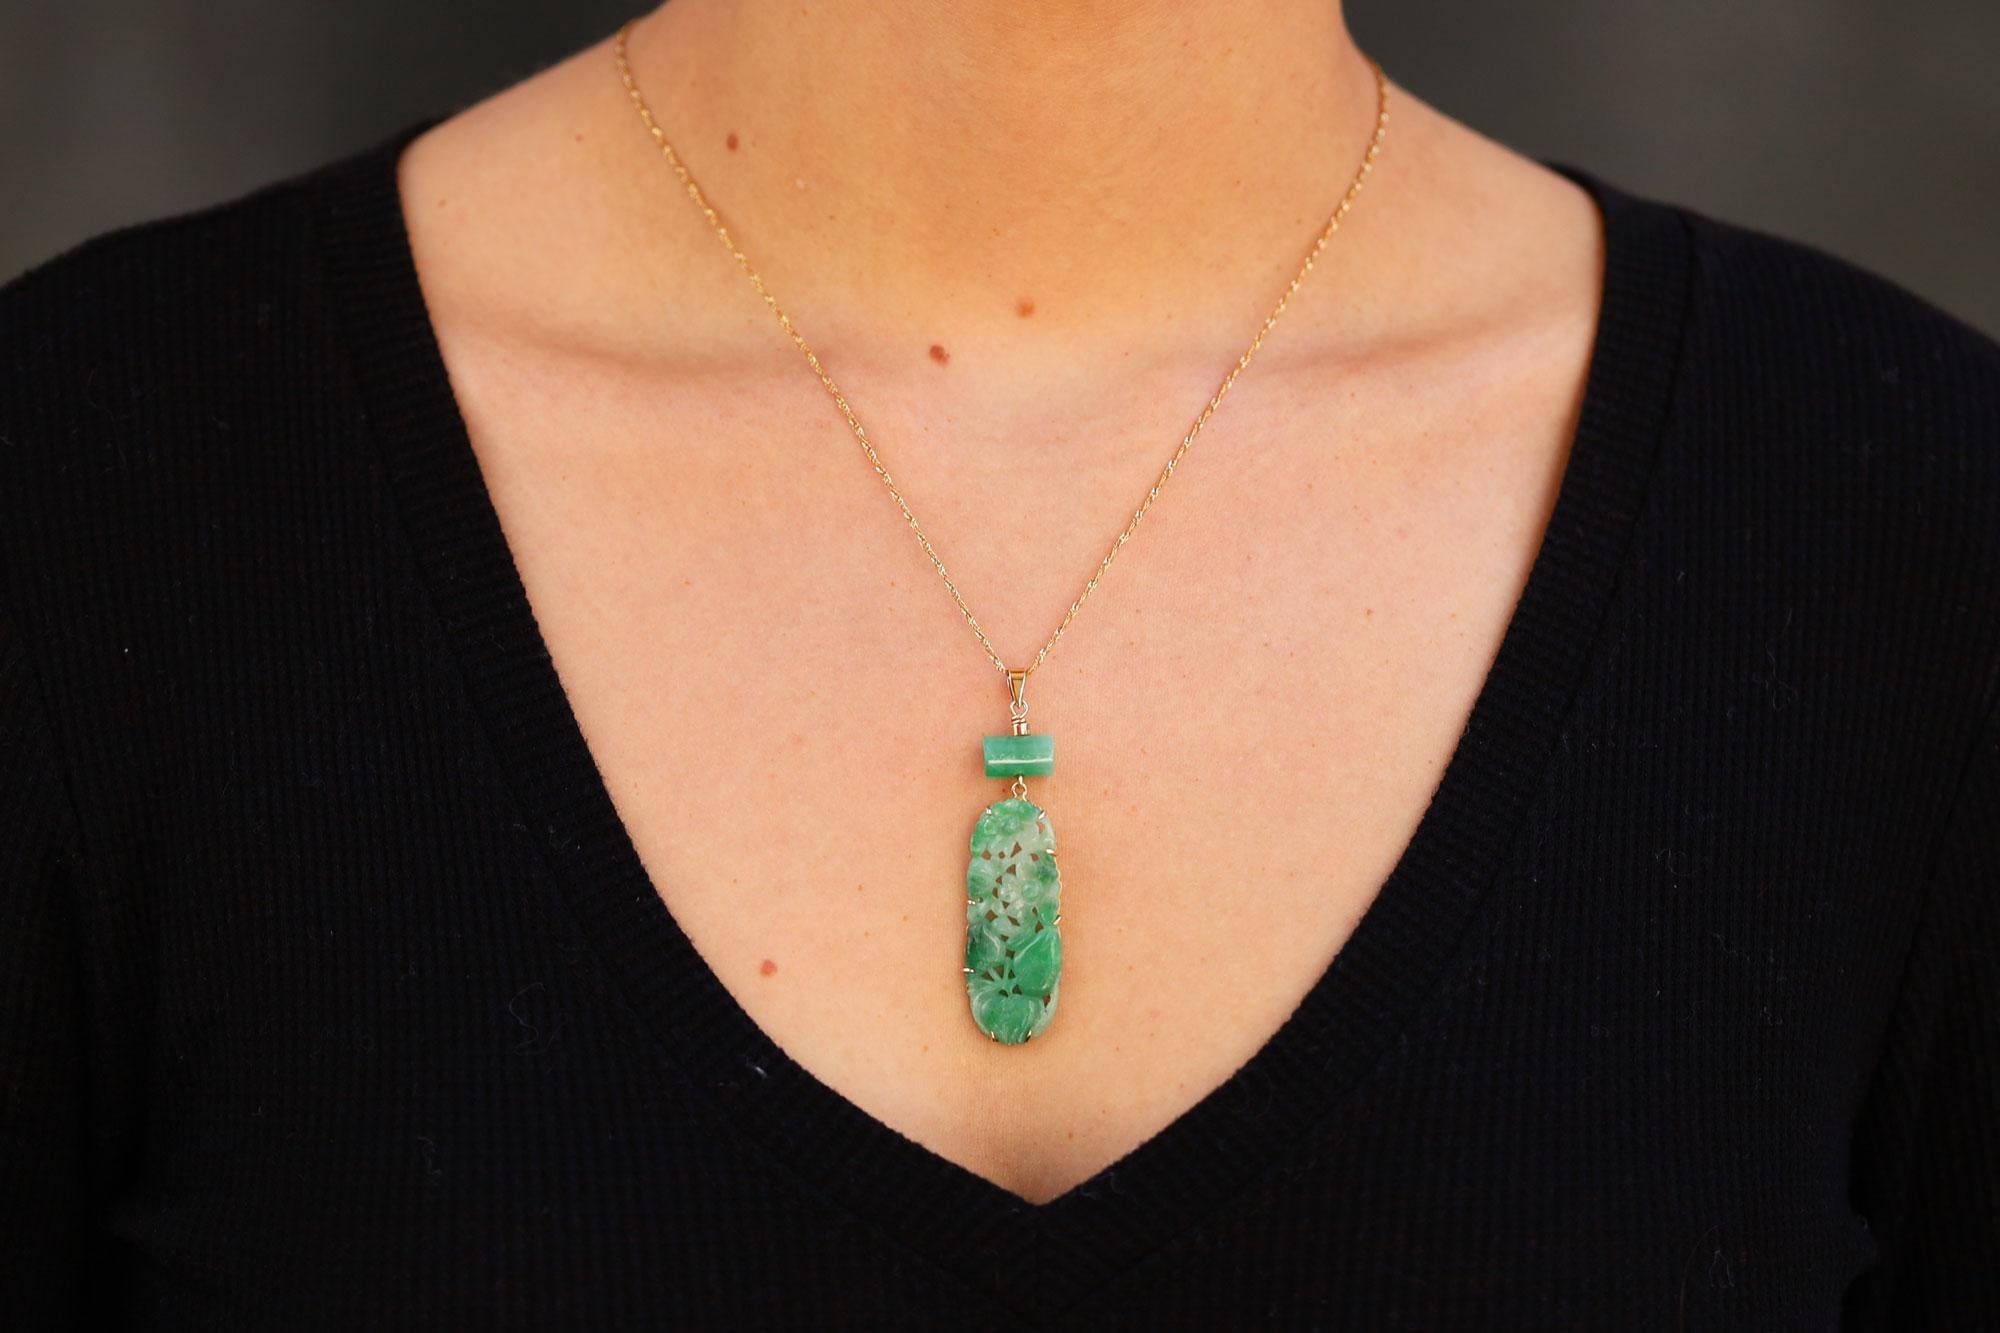 Die zentrale natürliche Jadeit-Jade in dieser reizvollen Tropfenkette besticht durch ihre lebendige, gesprenkelte grüne Farbe in einer wellenförmigen ovalen Schnitzerei. Die Piercings erlaubten es ihren chinesischen Besitzern, diese Amulette auf die